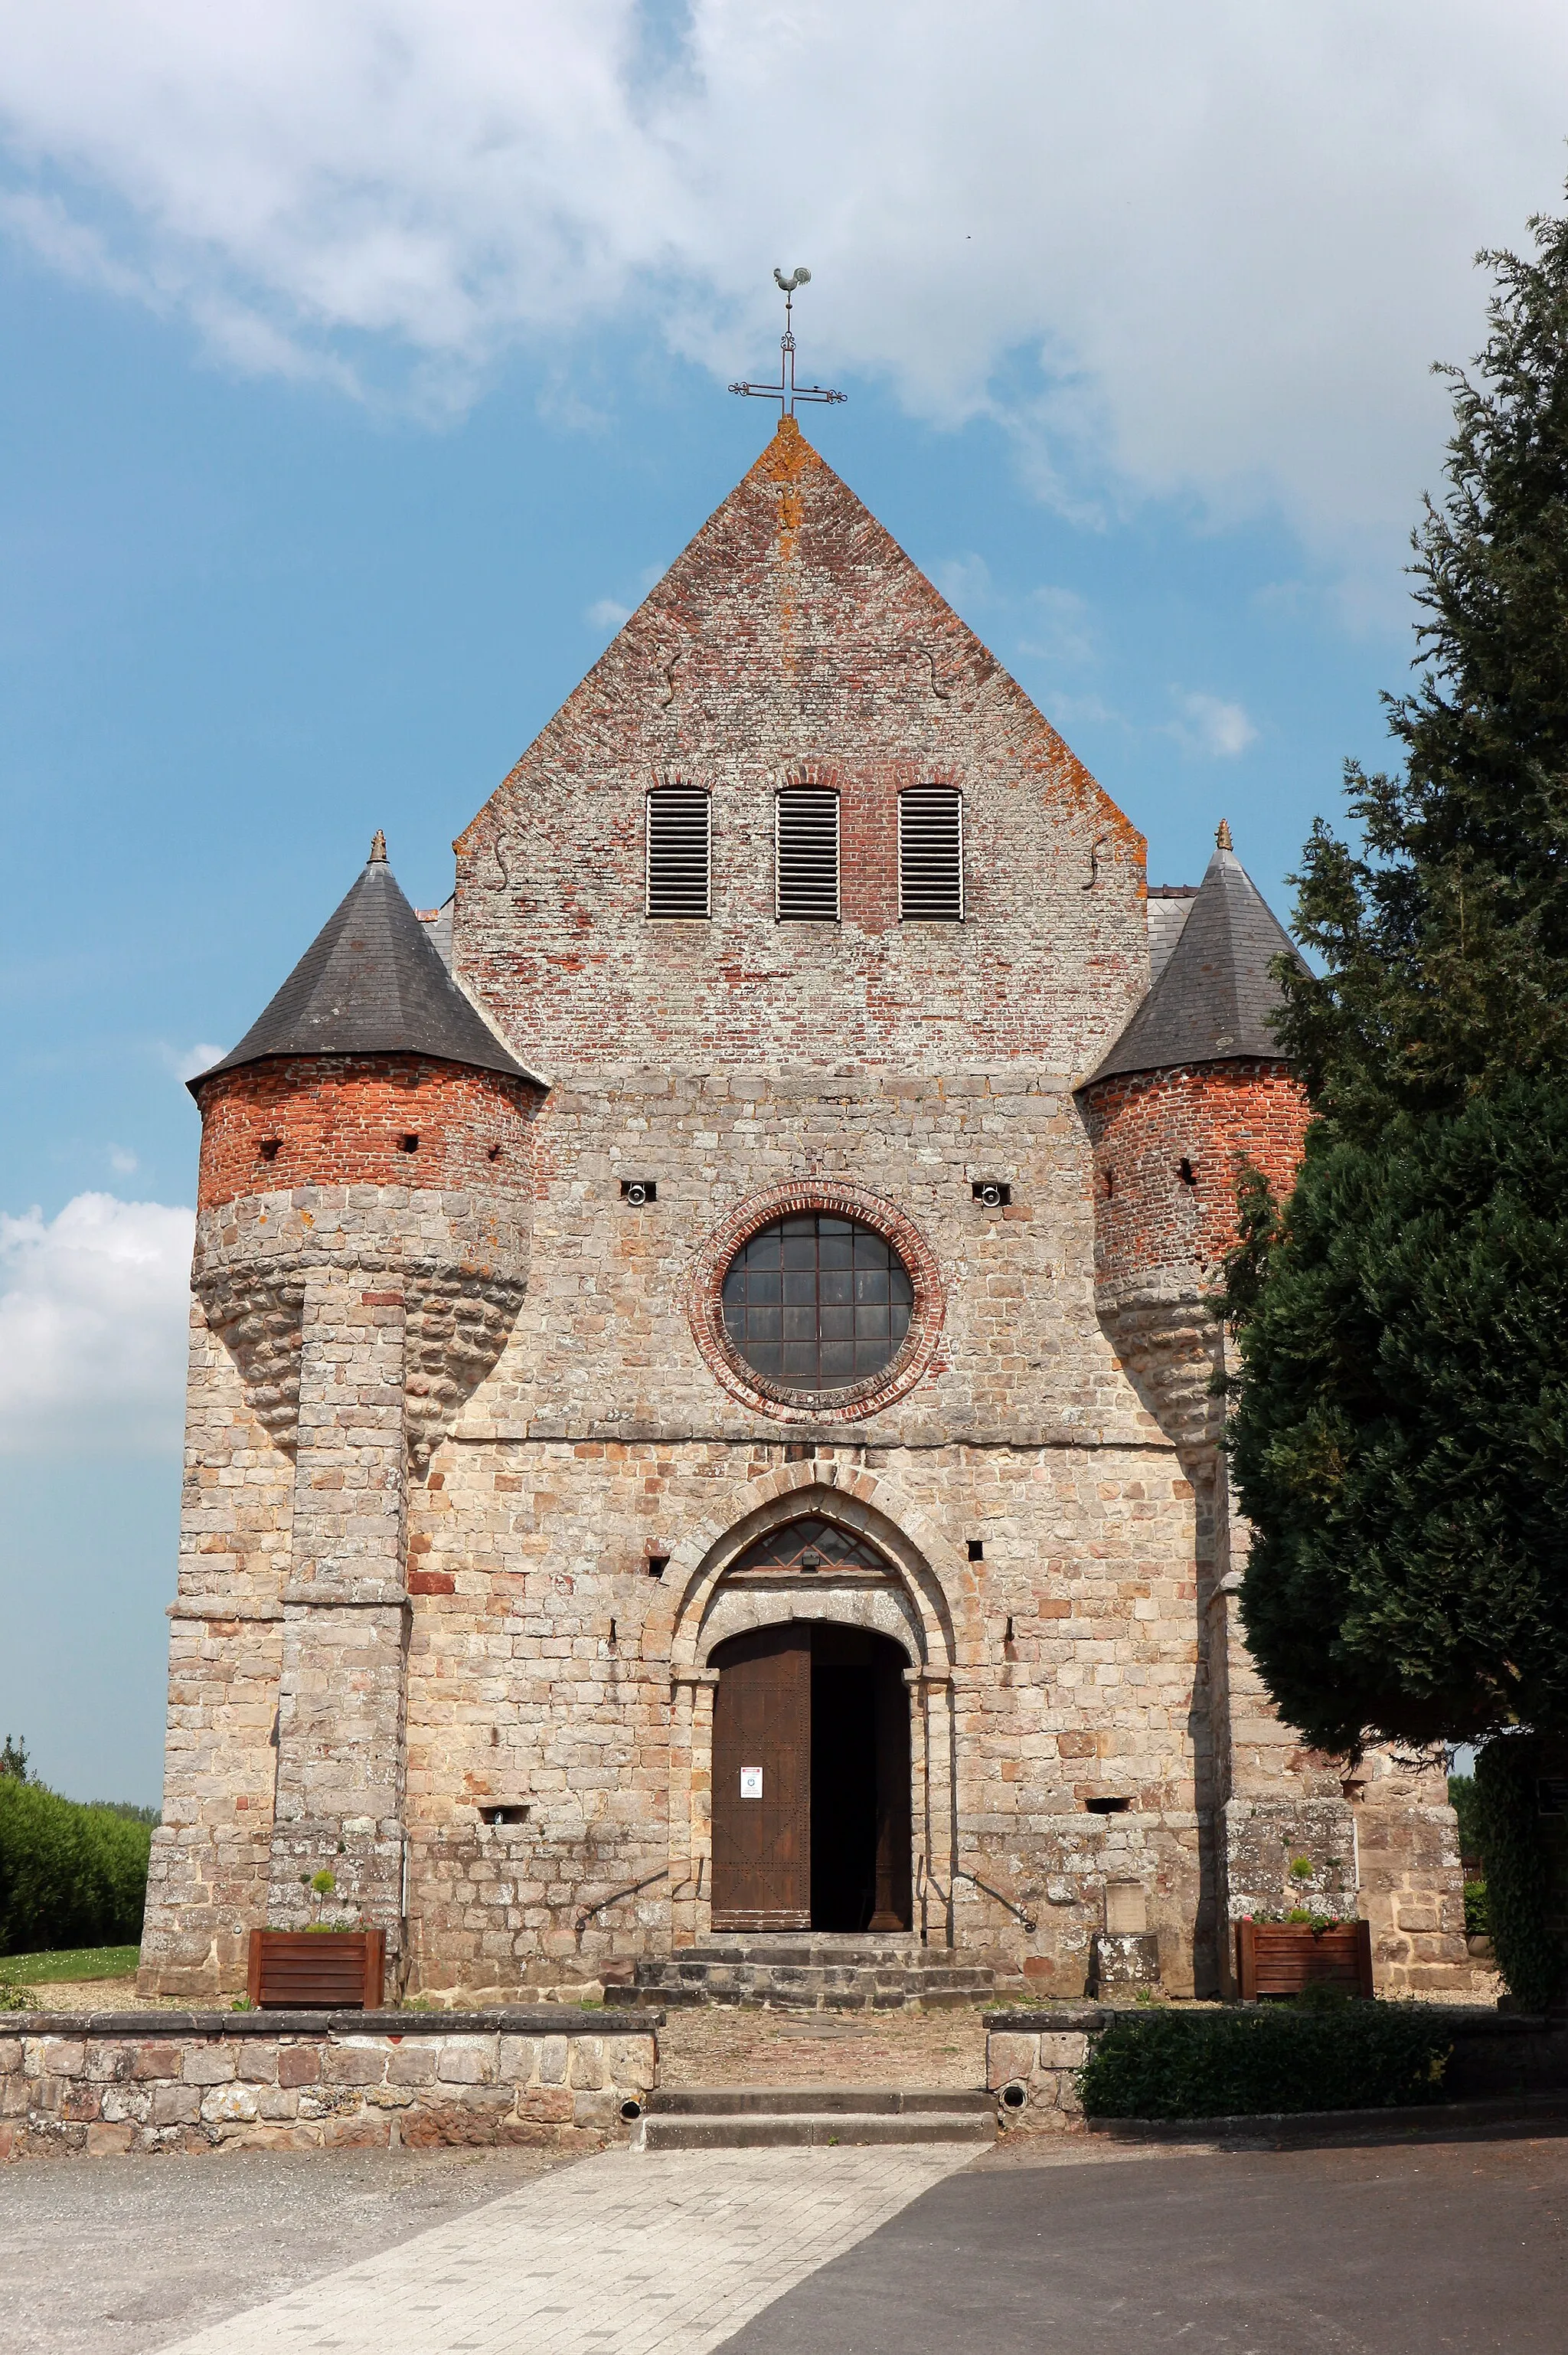 Photo showing: Marly-Gomont (France - département de l'Aisne) — L'église Saint Rémy. Façade Ouest du XIIIe ou XIVe siècle.
https://monumentum.fr/eglise-pa00115809.html